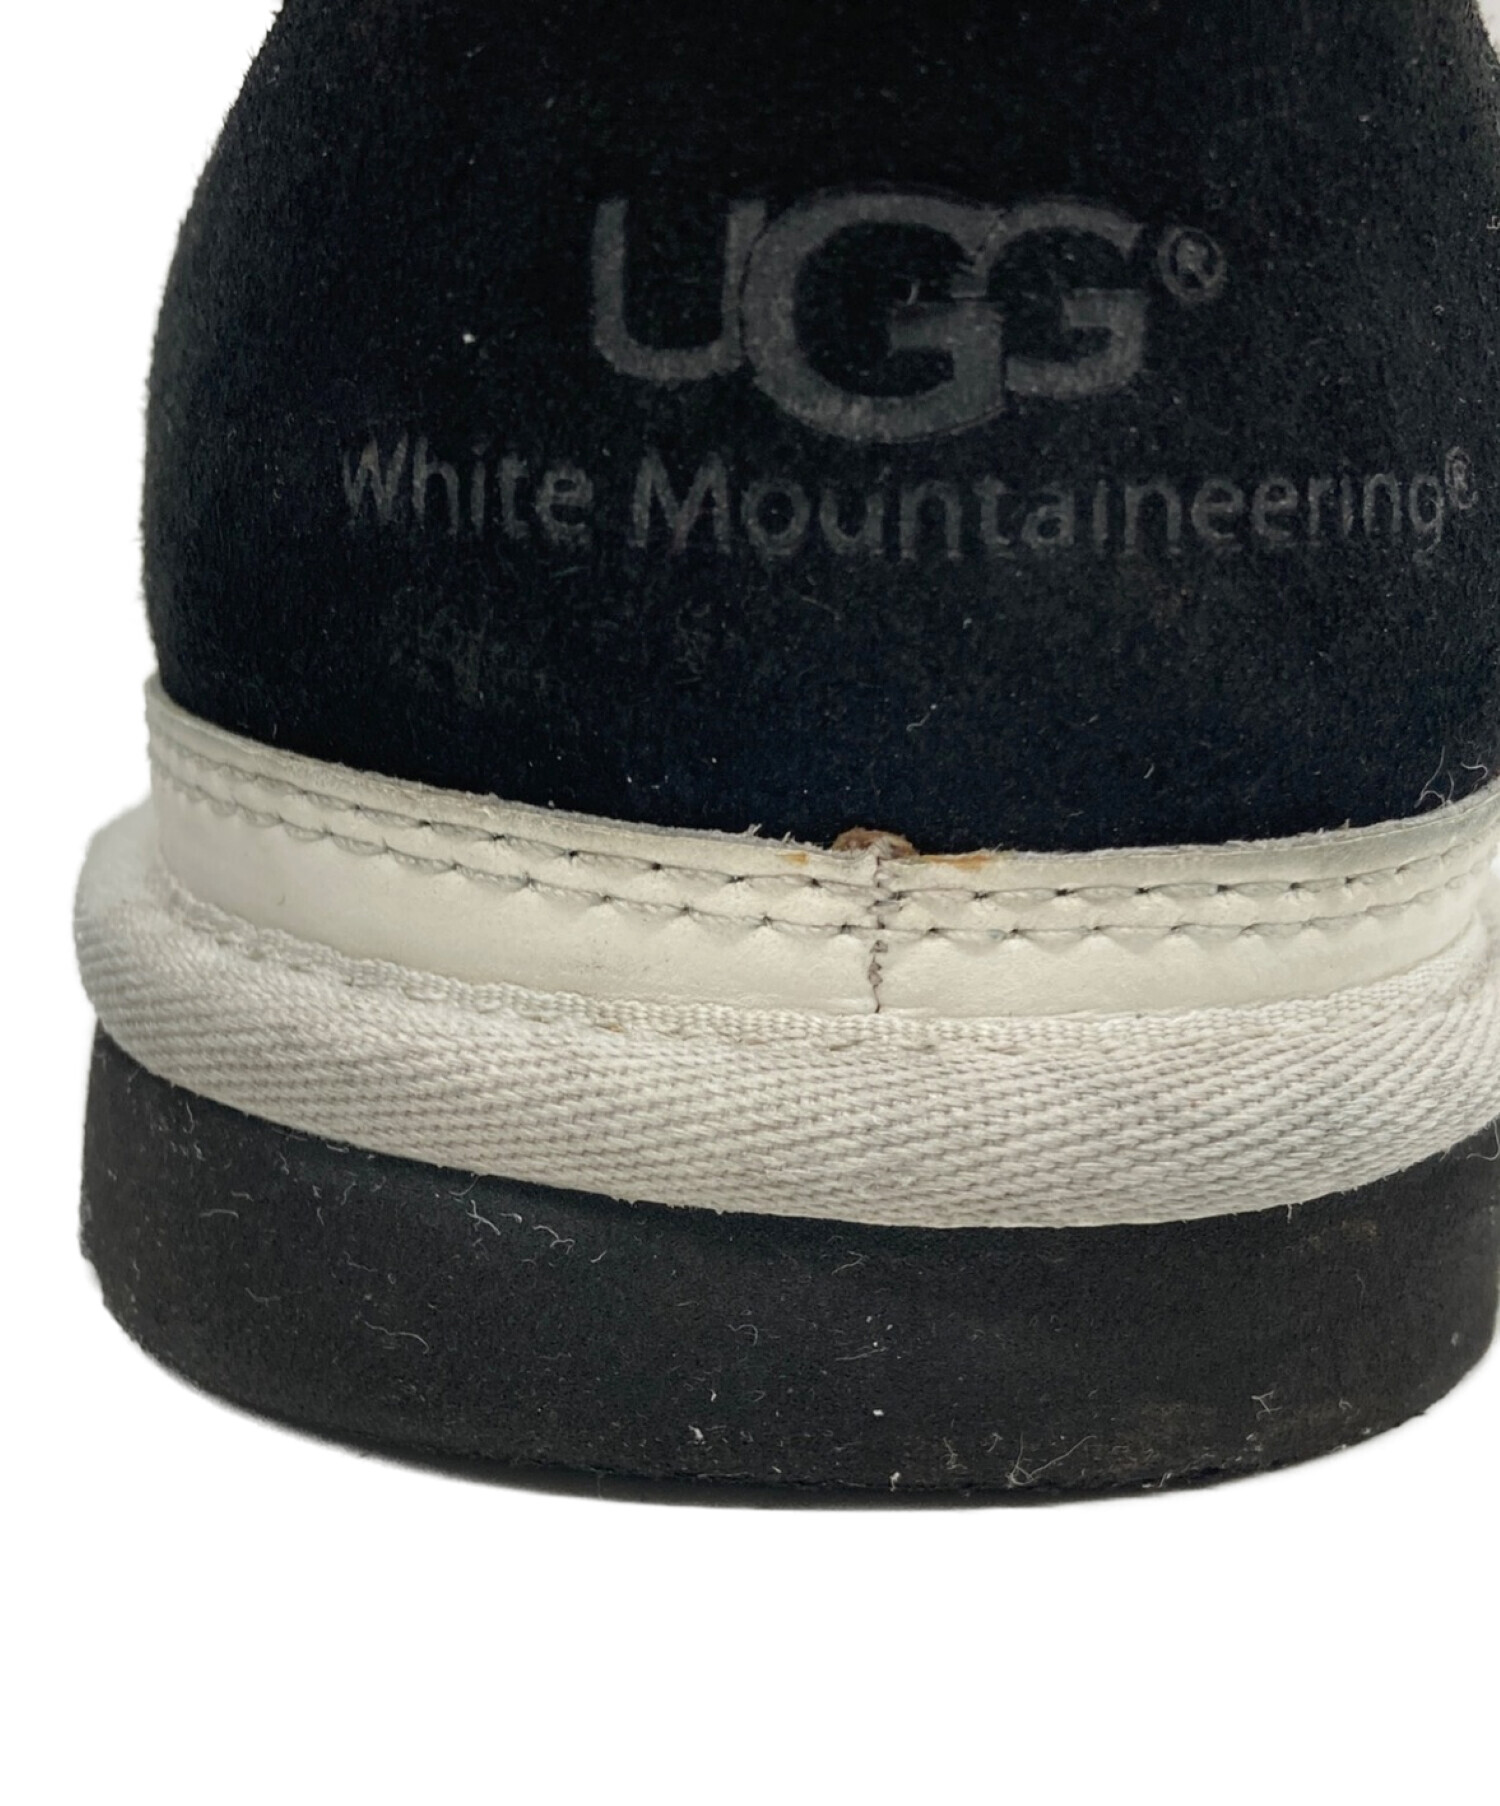 UGG (アグ) WHITE MOUNTAINEERING (ホワイトマウンテ二アニング) RIKIムートンブーツ ブラック サイズ:28㎝